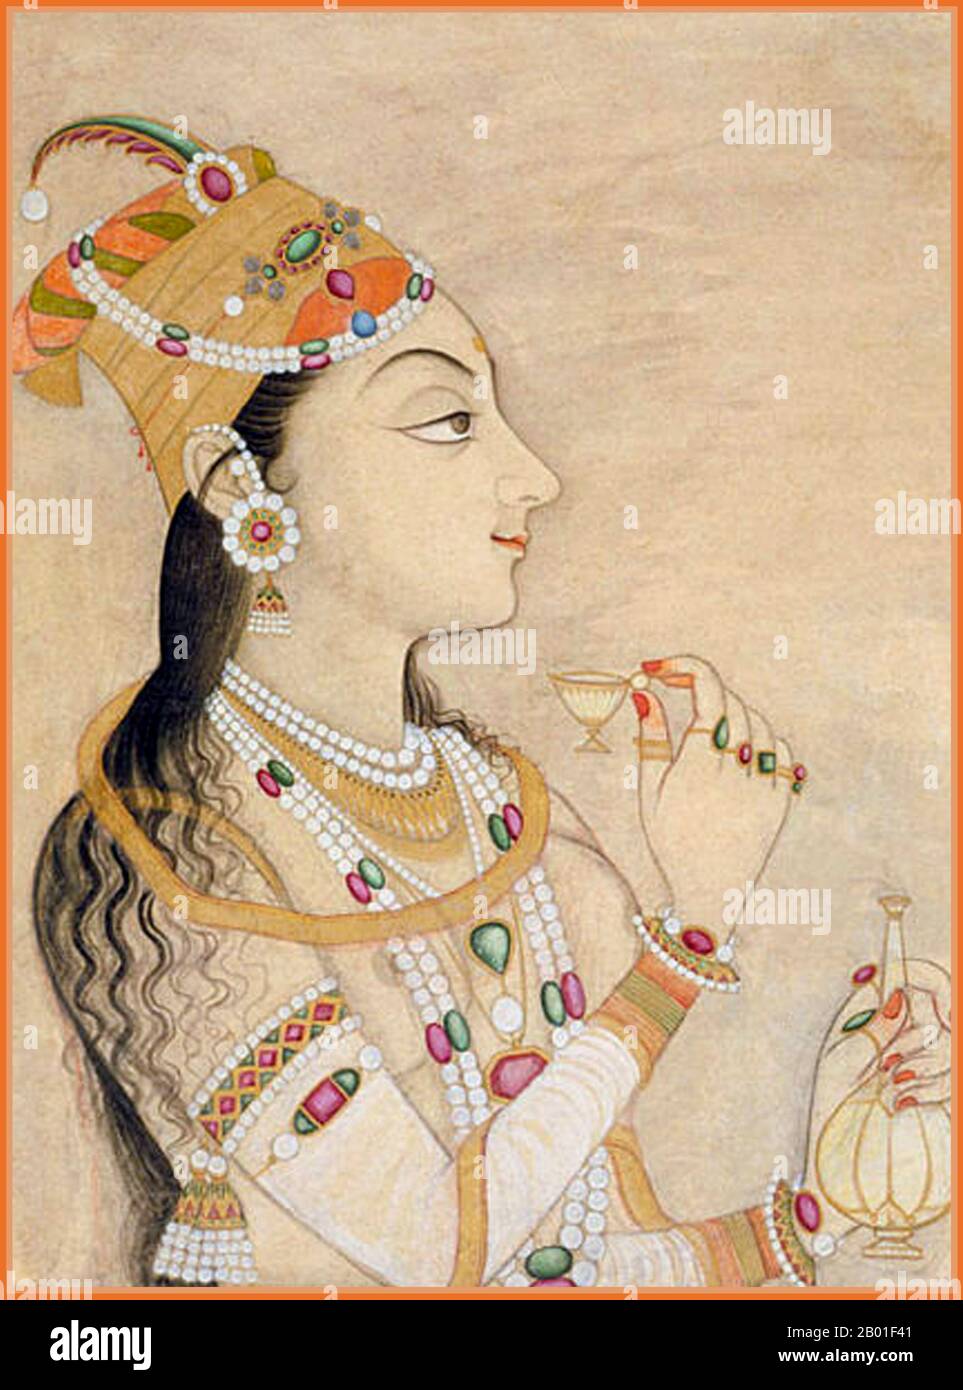 India: L'imperatrice Nur Jahan (1577 - 18 dicembre 1645). Rajasthani acquerello pittura, Kishangarh, c. 1725. Begum Nur Jahan (l'ortografia alternativa Noor Jahan, Nur Jehan, Nor Jahan), conosciuto anche come Mehr-un-Nissa, è stato un'imperatrice della dinastia Mughal che governava gran parte del subcontinente indiano. Nur Jahan era la ventesima moglie preferita dell'imperatore Mughal Jahangir, che era il suo secondo marito, e l'imperatrice più famosa dell'Impero Mughal. La storia dell'infatuazione della coppia l'una per l'altra e del rapporto che ha rispettato fra loro è il roba di molte leggende (spesso apocrifali). Foto Stock